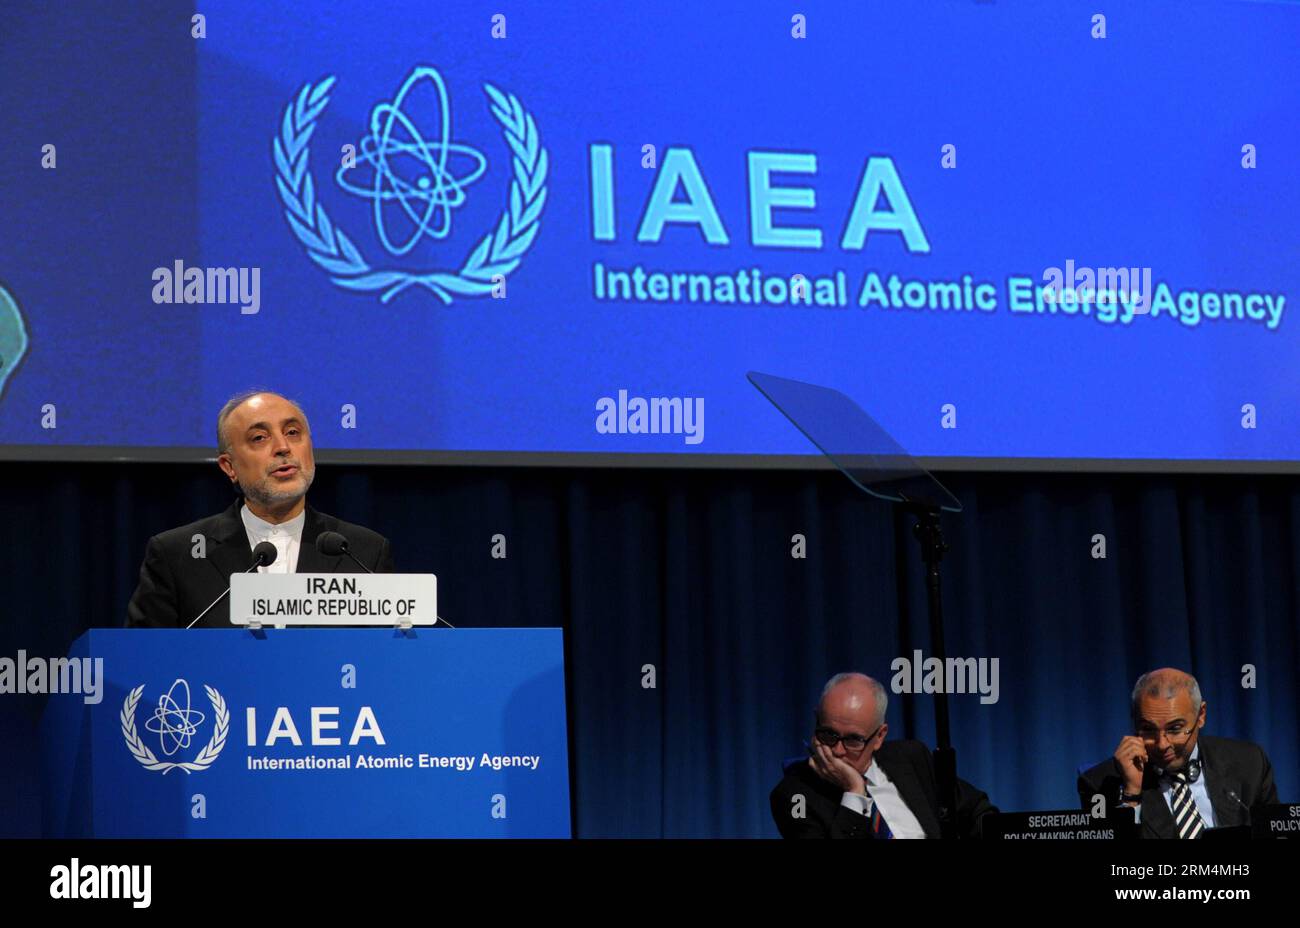 Bildnummer : 60482782 Datum : 16.09.2013 Copyright : imago/Xinhua (130916) -- VIENNE, 16 septembre 2013 (Xinhua) -- Ali Akbar Salehi, vice-président iranien et chef de l'Organisation iranienne de l'énergie atomique, prend la parole lors de la 57e Conférence générale de l'Agence internationale de l'énergie atomique (AIEA) à Vienne, capitale de l'Autriche, le 16 septembre 2013. (Xinhua/Qian Yi) (syq) AUTRICHE-VIENNE-AIEA-CONFÉRENCE GÉNÉRALE PUBLICATIONxNOTxINxCHN People Politik Atomenergiebehörde premiumd xsp x0x 2013 quer 60482782 Date 16 09 2013 Copyright Imago XINHUA Vienne sept 16 2013 XINHUA Ali Akbar Salehi Vice iranien P Banque D'Images